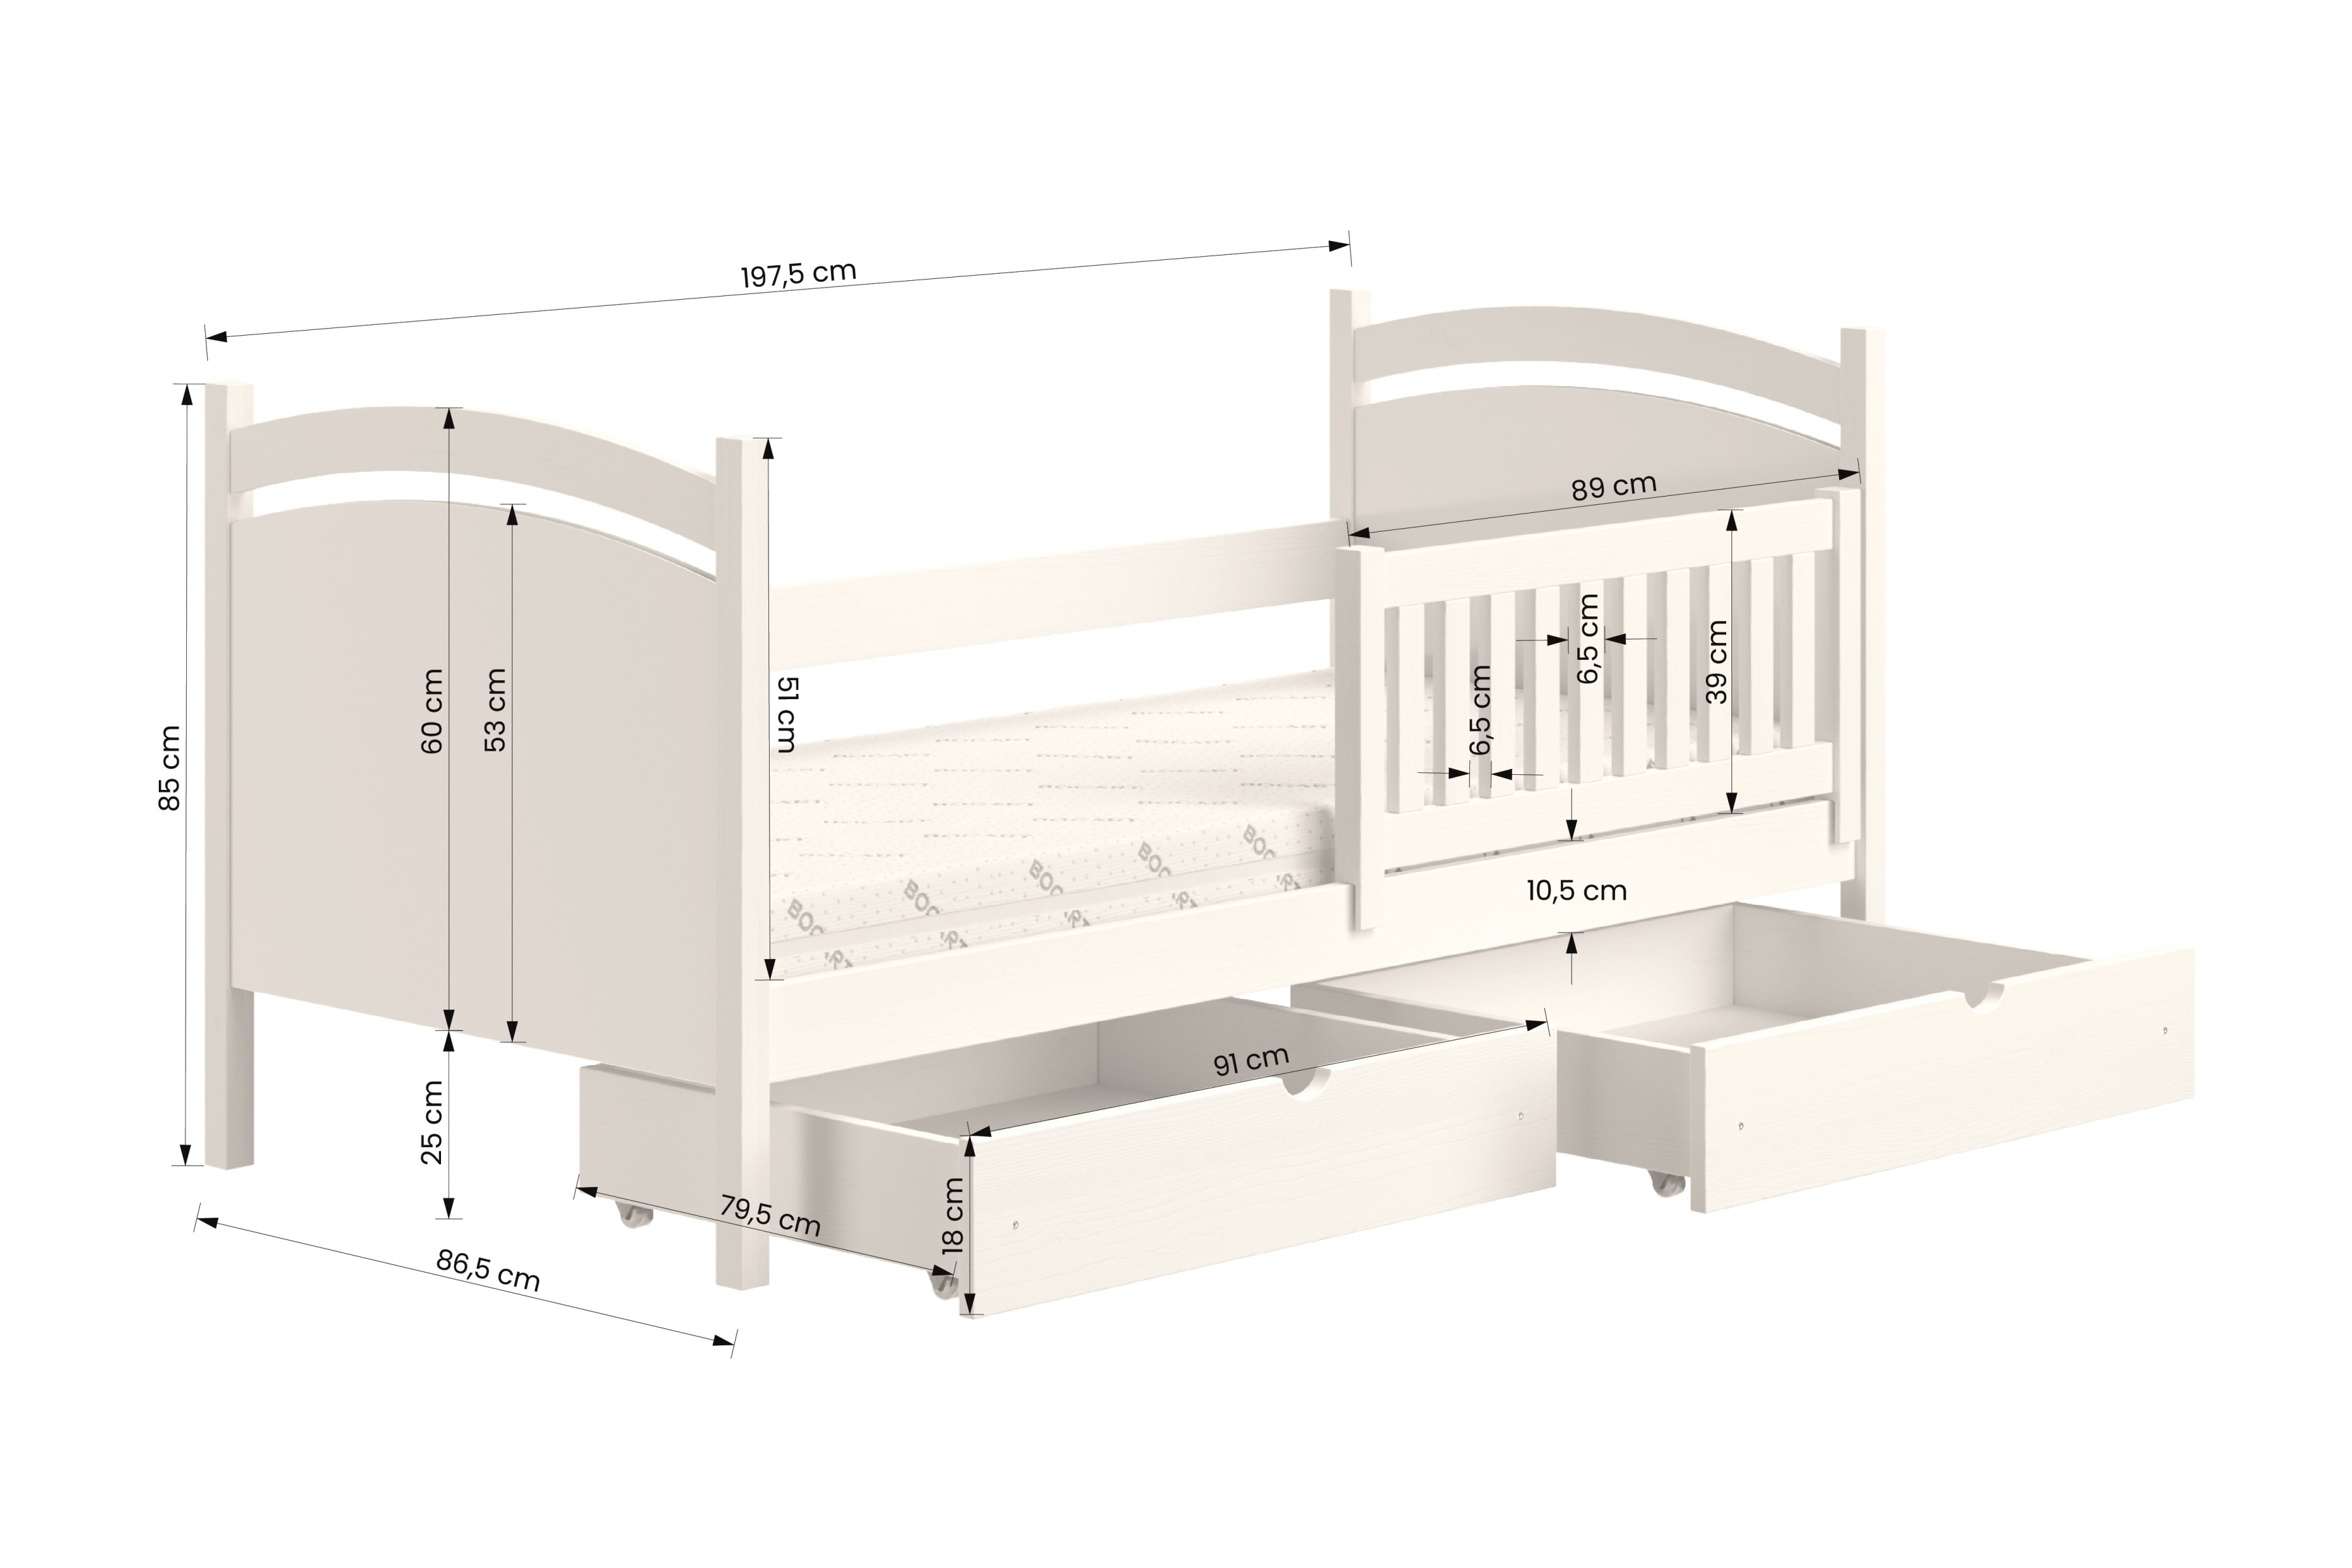 Detská posteľ s tabuľou Amely - Farba šedý, rozmer 80x190 Posteľ dzieciece z tablica suchoscieralna Amely - Rozmery